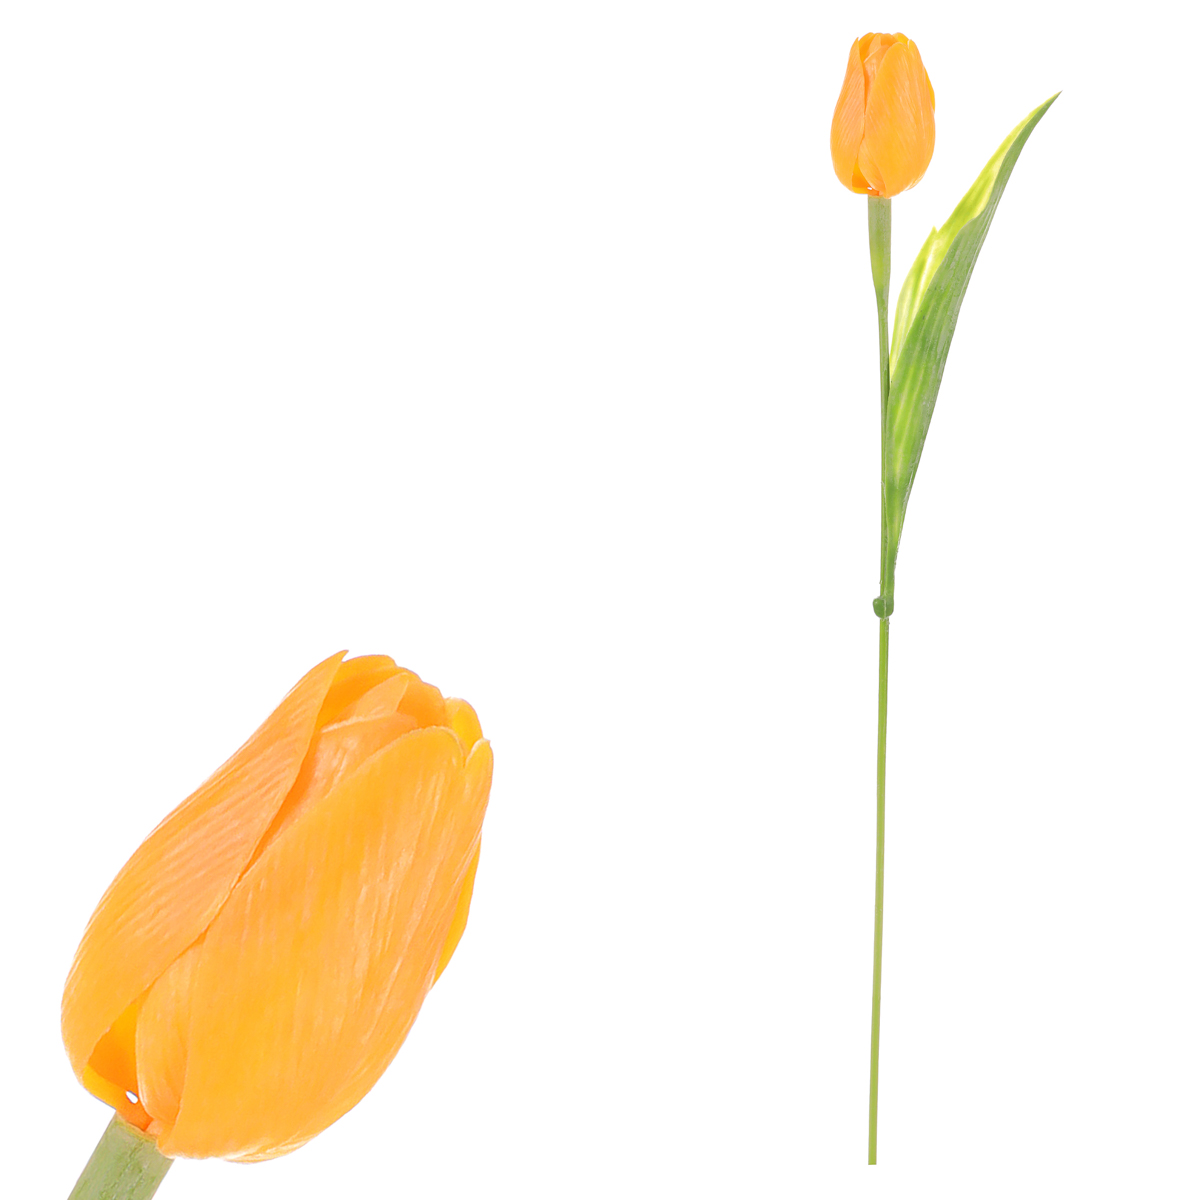 Tulipán plastový, barva tmavě žlutá. Ve svazku 12 ks.